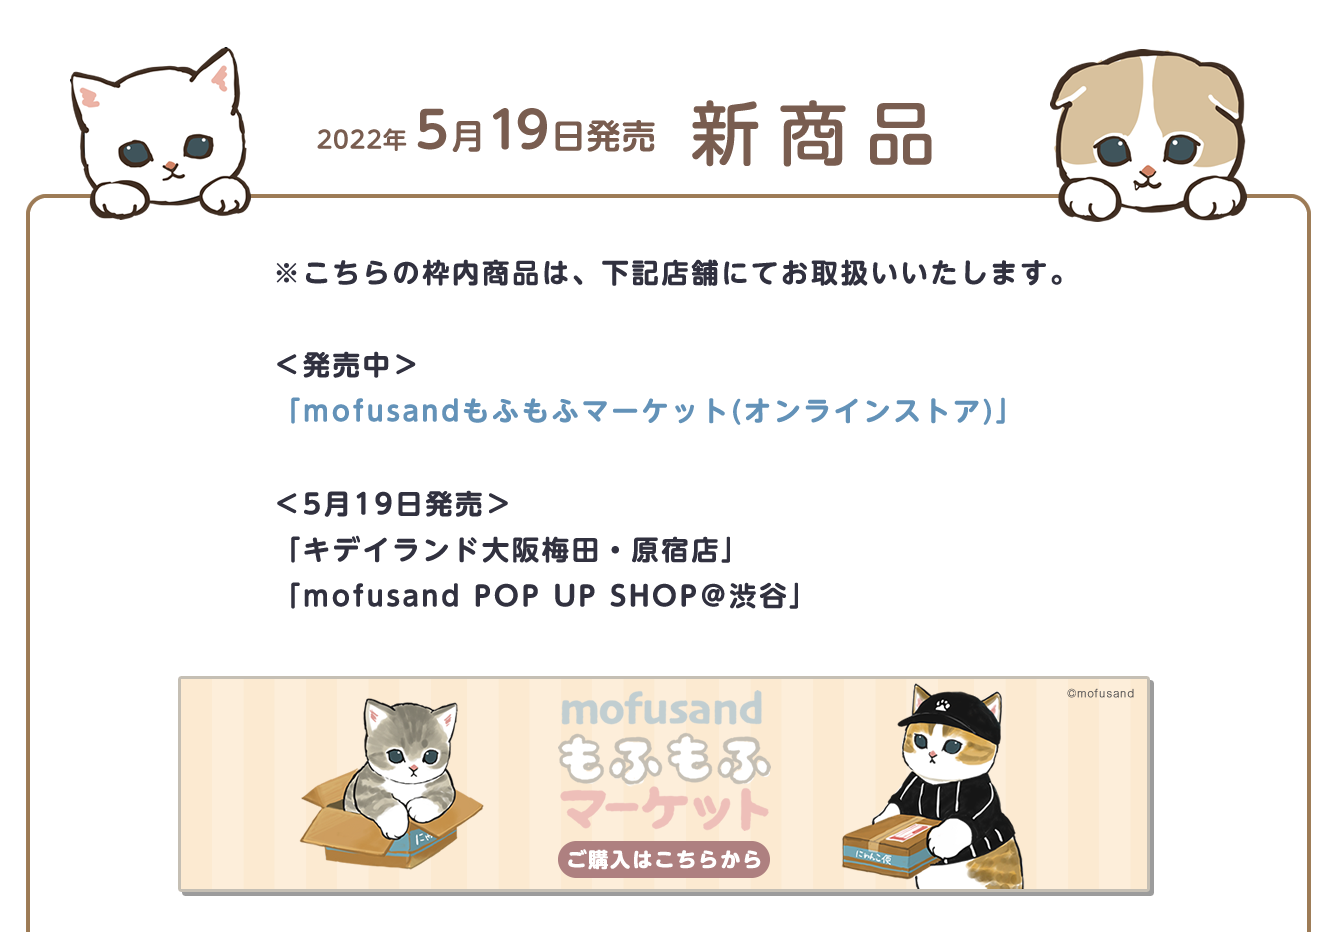 mofusand POP UP SHOP 渋谷PARCO